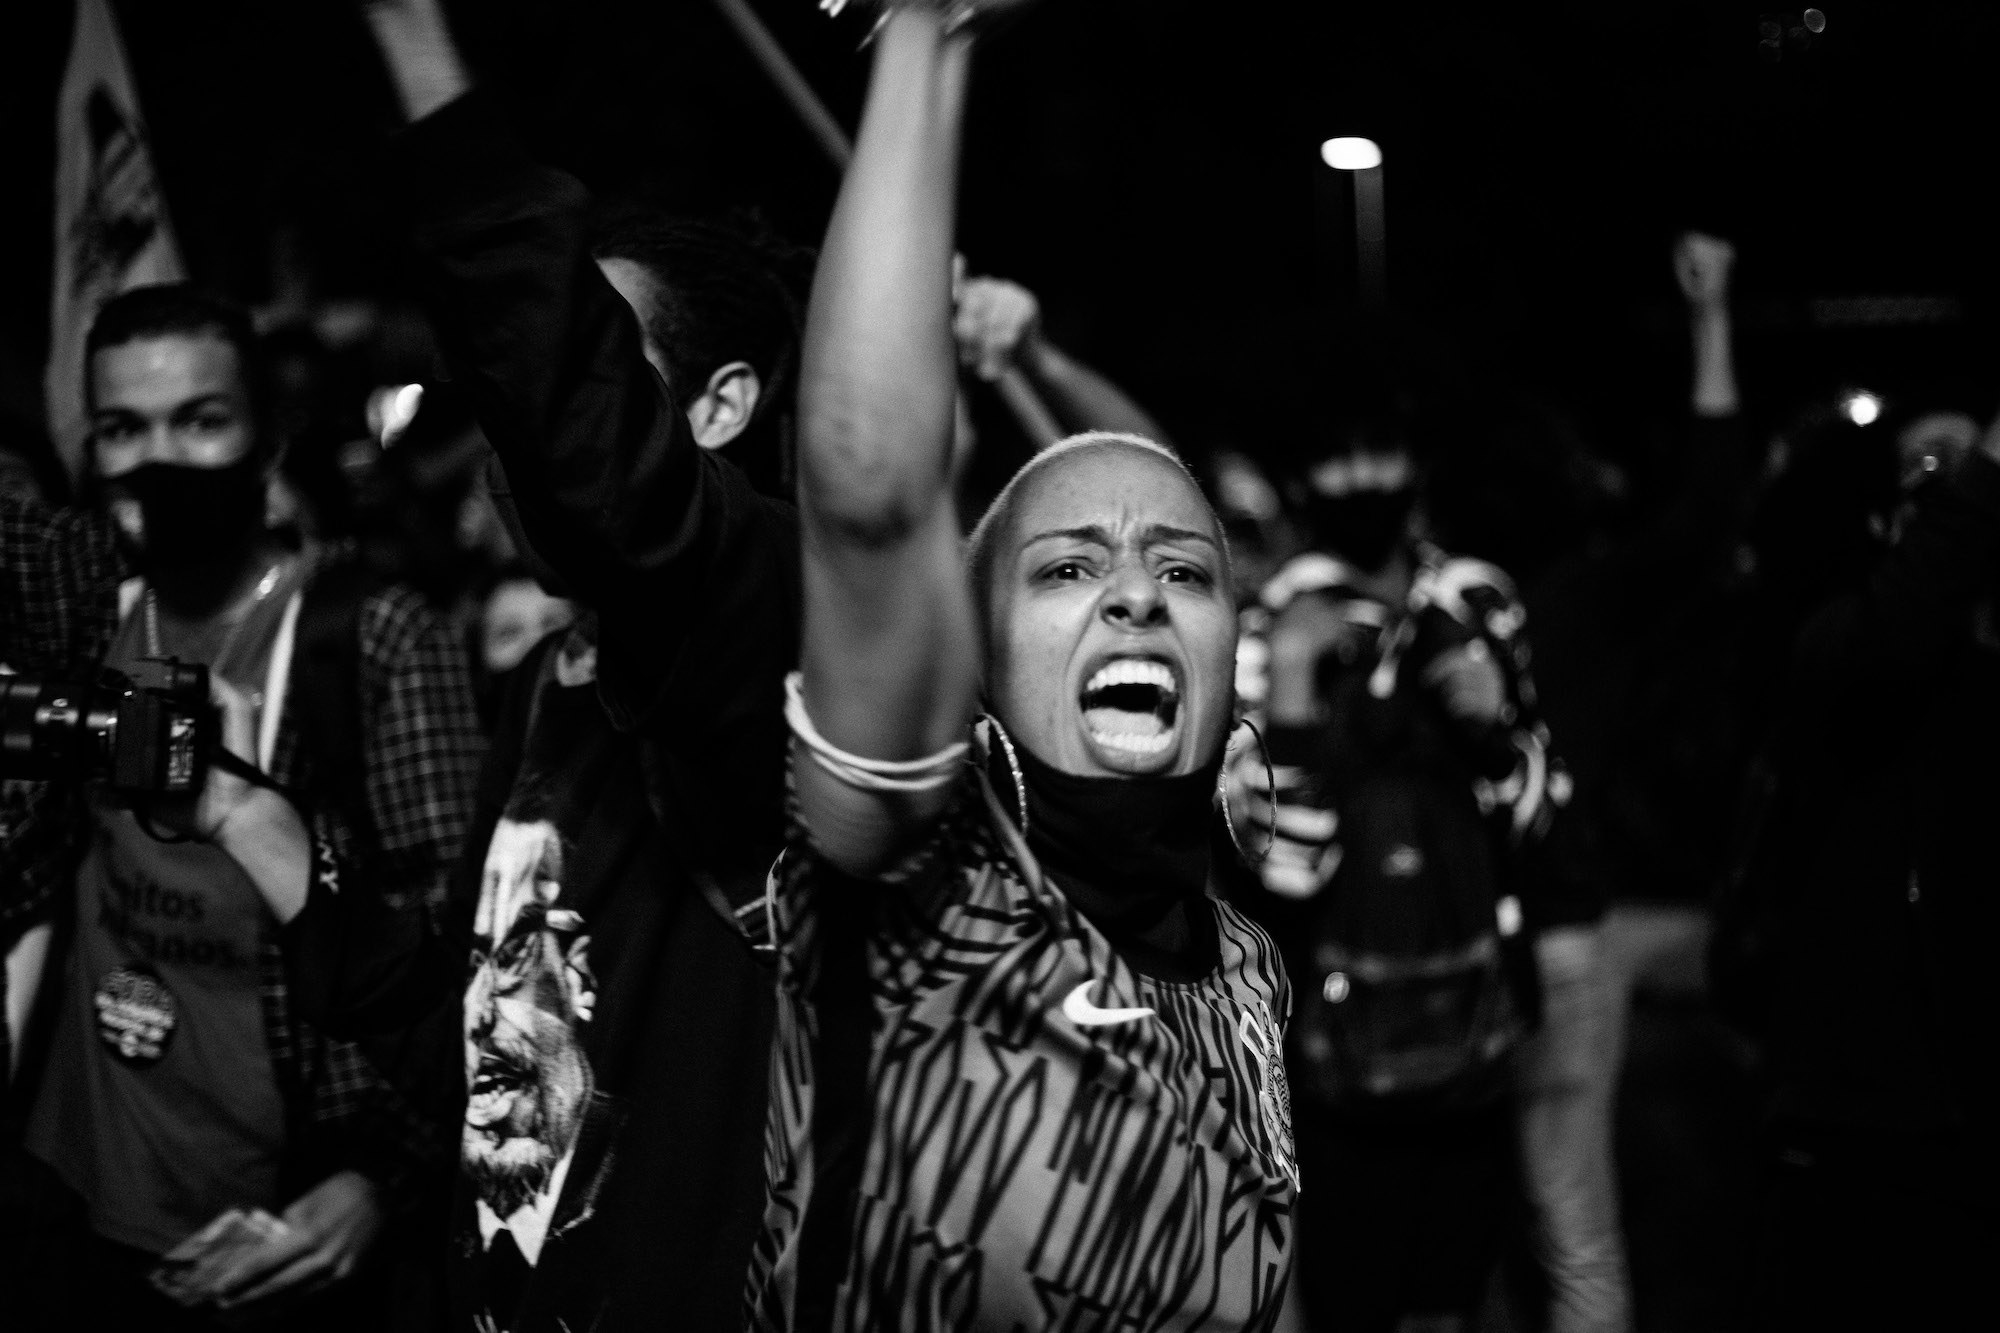 Mulher de raspado vestindo camiseta com estampa de pixo e brincos de argola, com bandana preta no pescoço, gritando com braço erguido, pessoas com braços erguidos passando atrás.